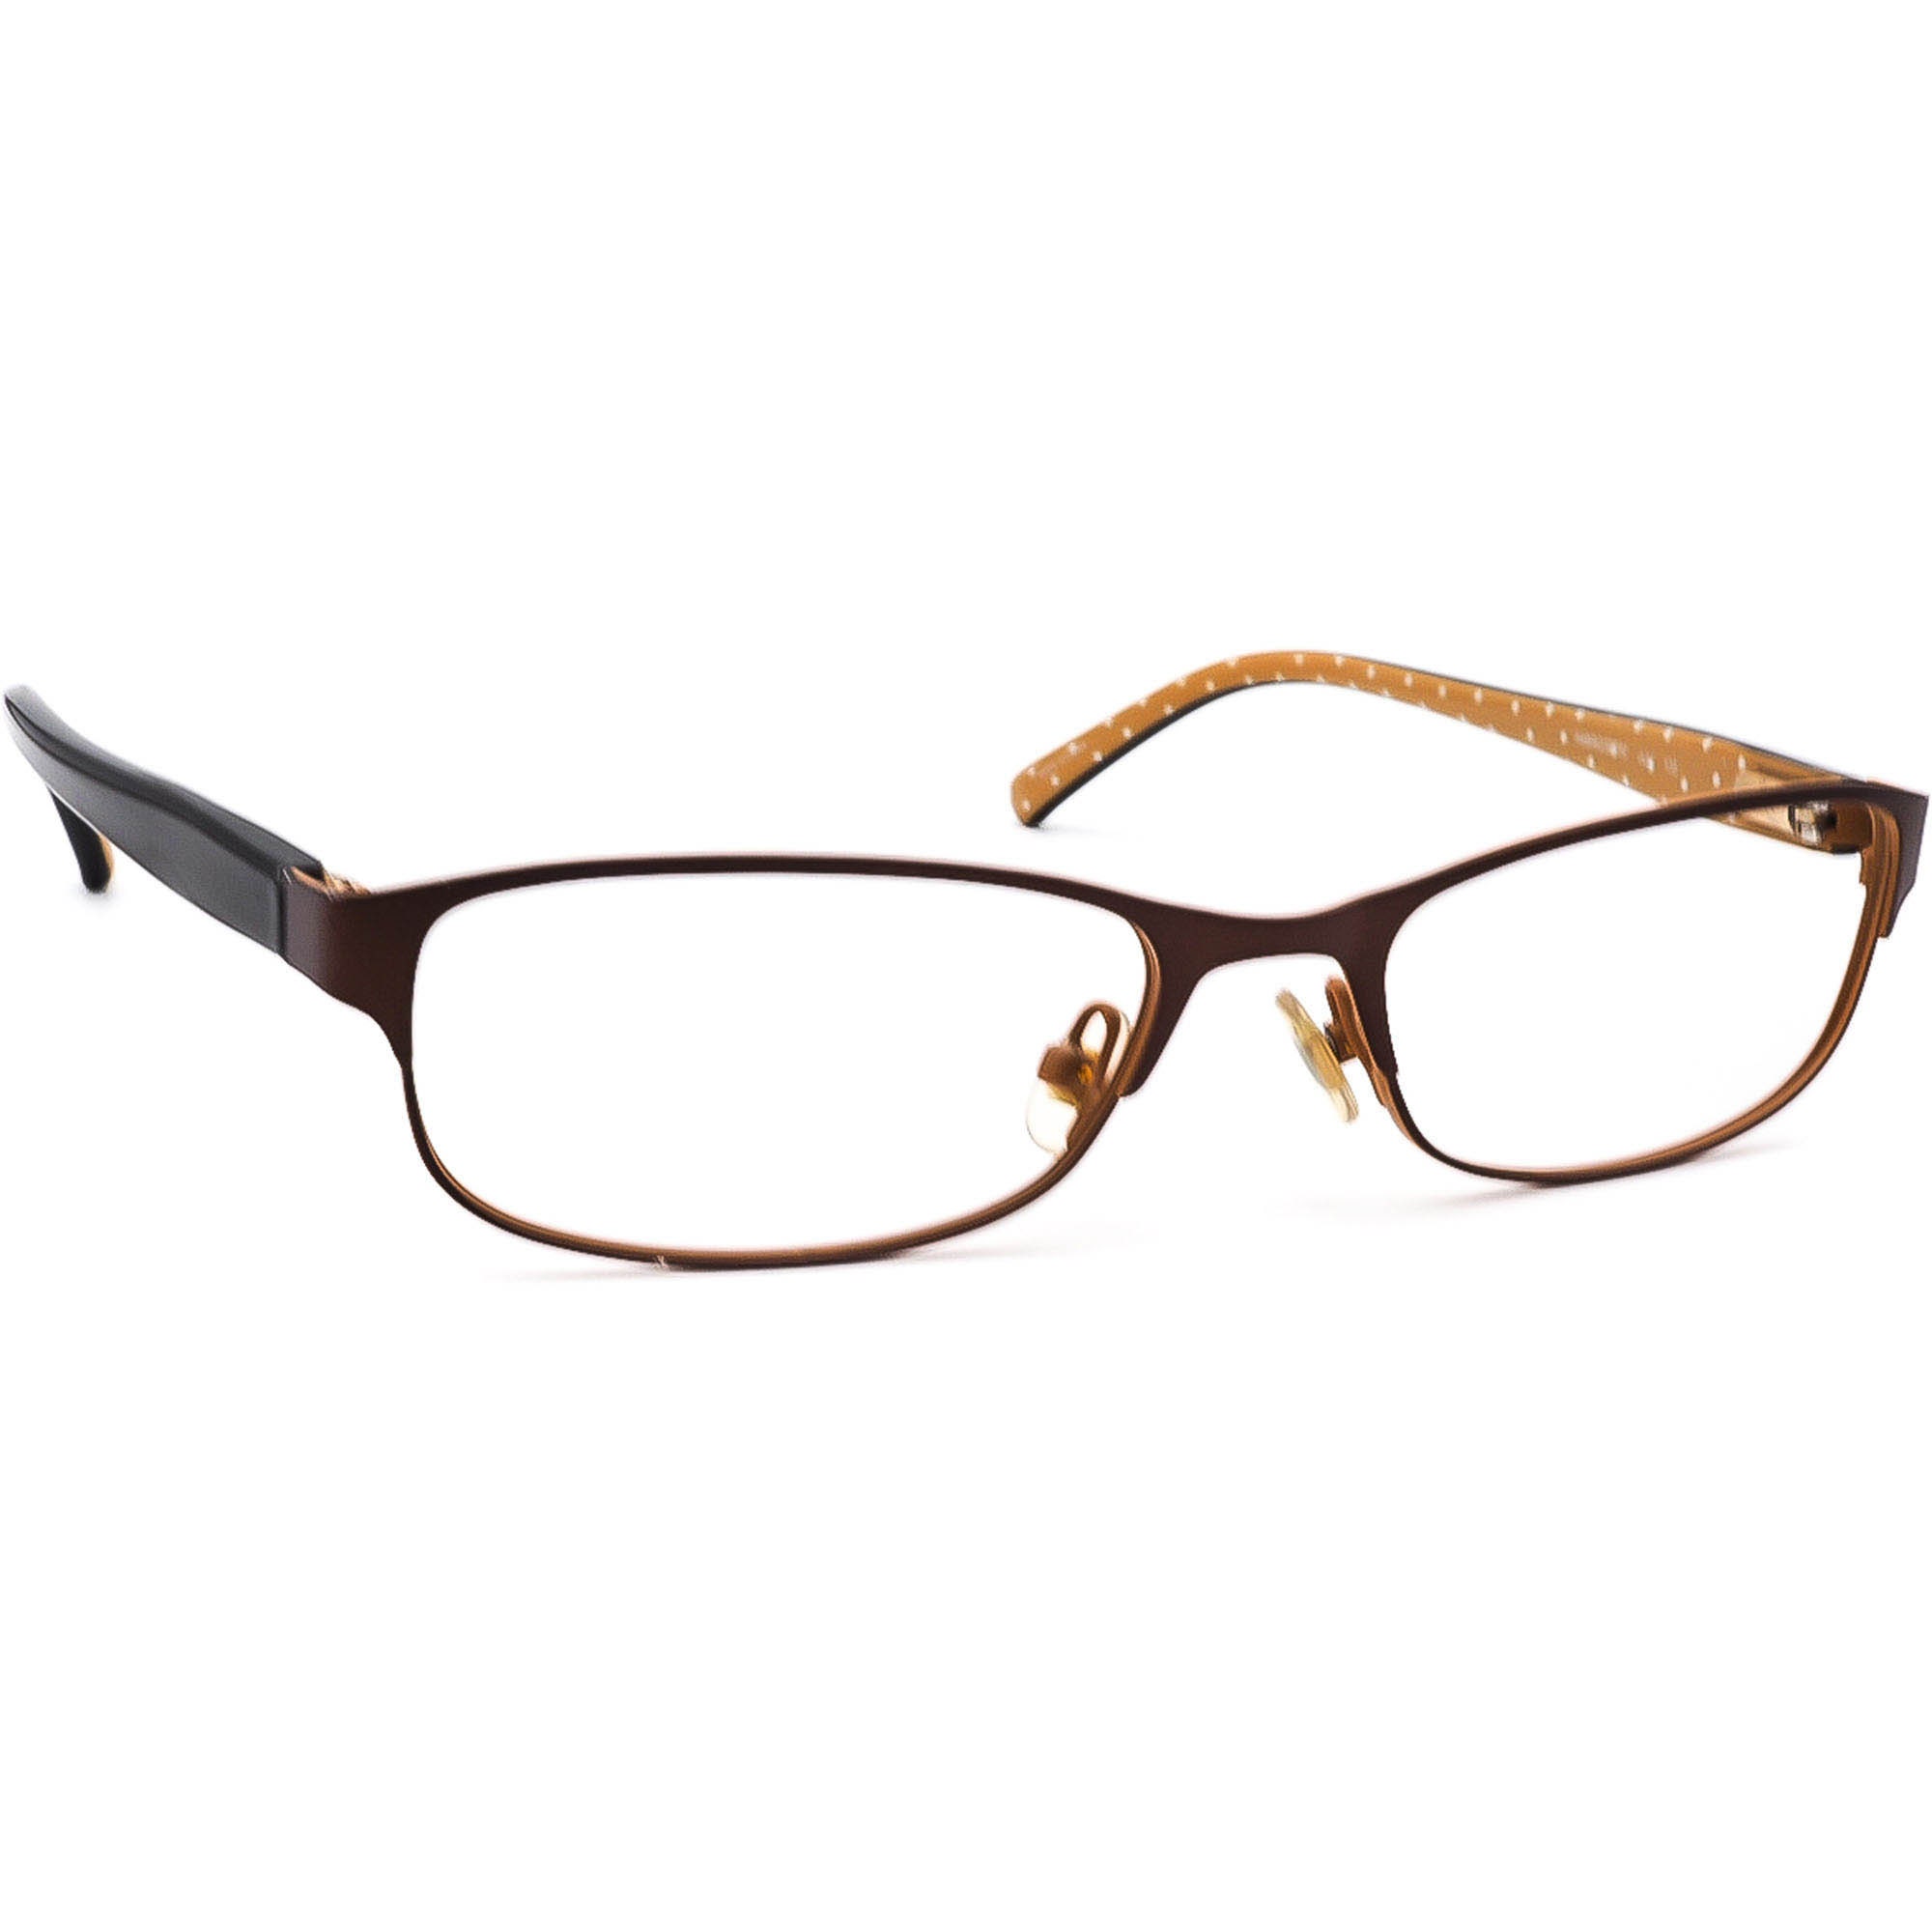 Kate Spade Eyeglasses Ambrosette JUV Brown/dark Tortoise Frame - Etsy